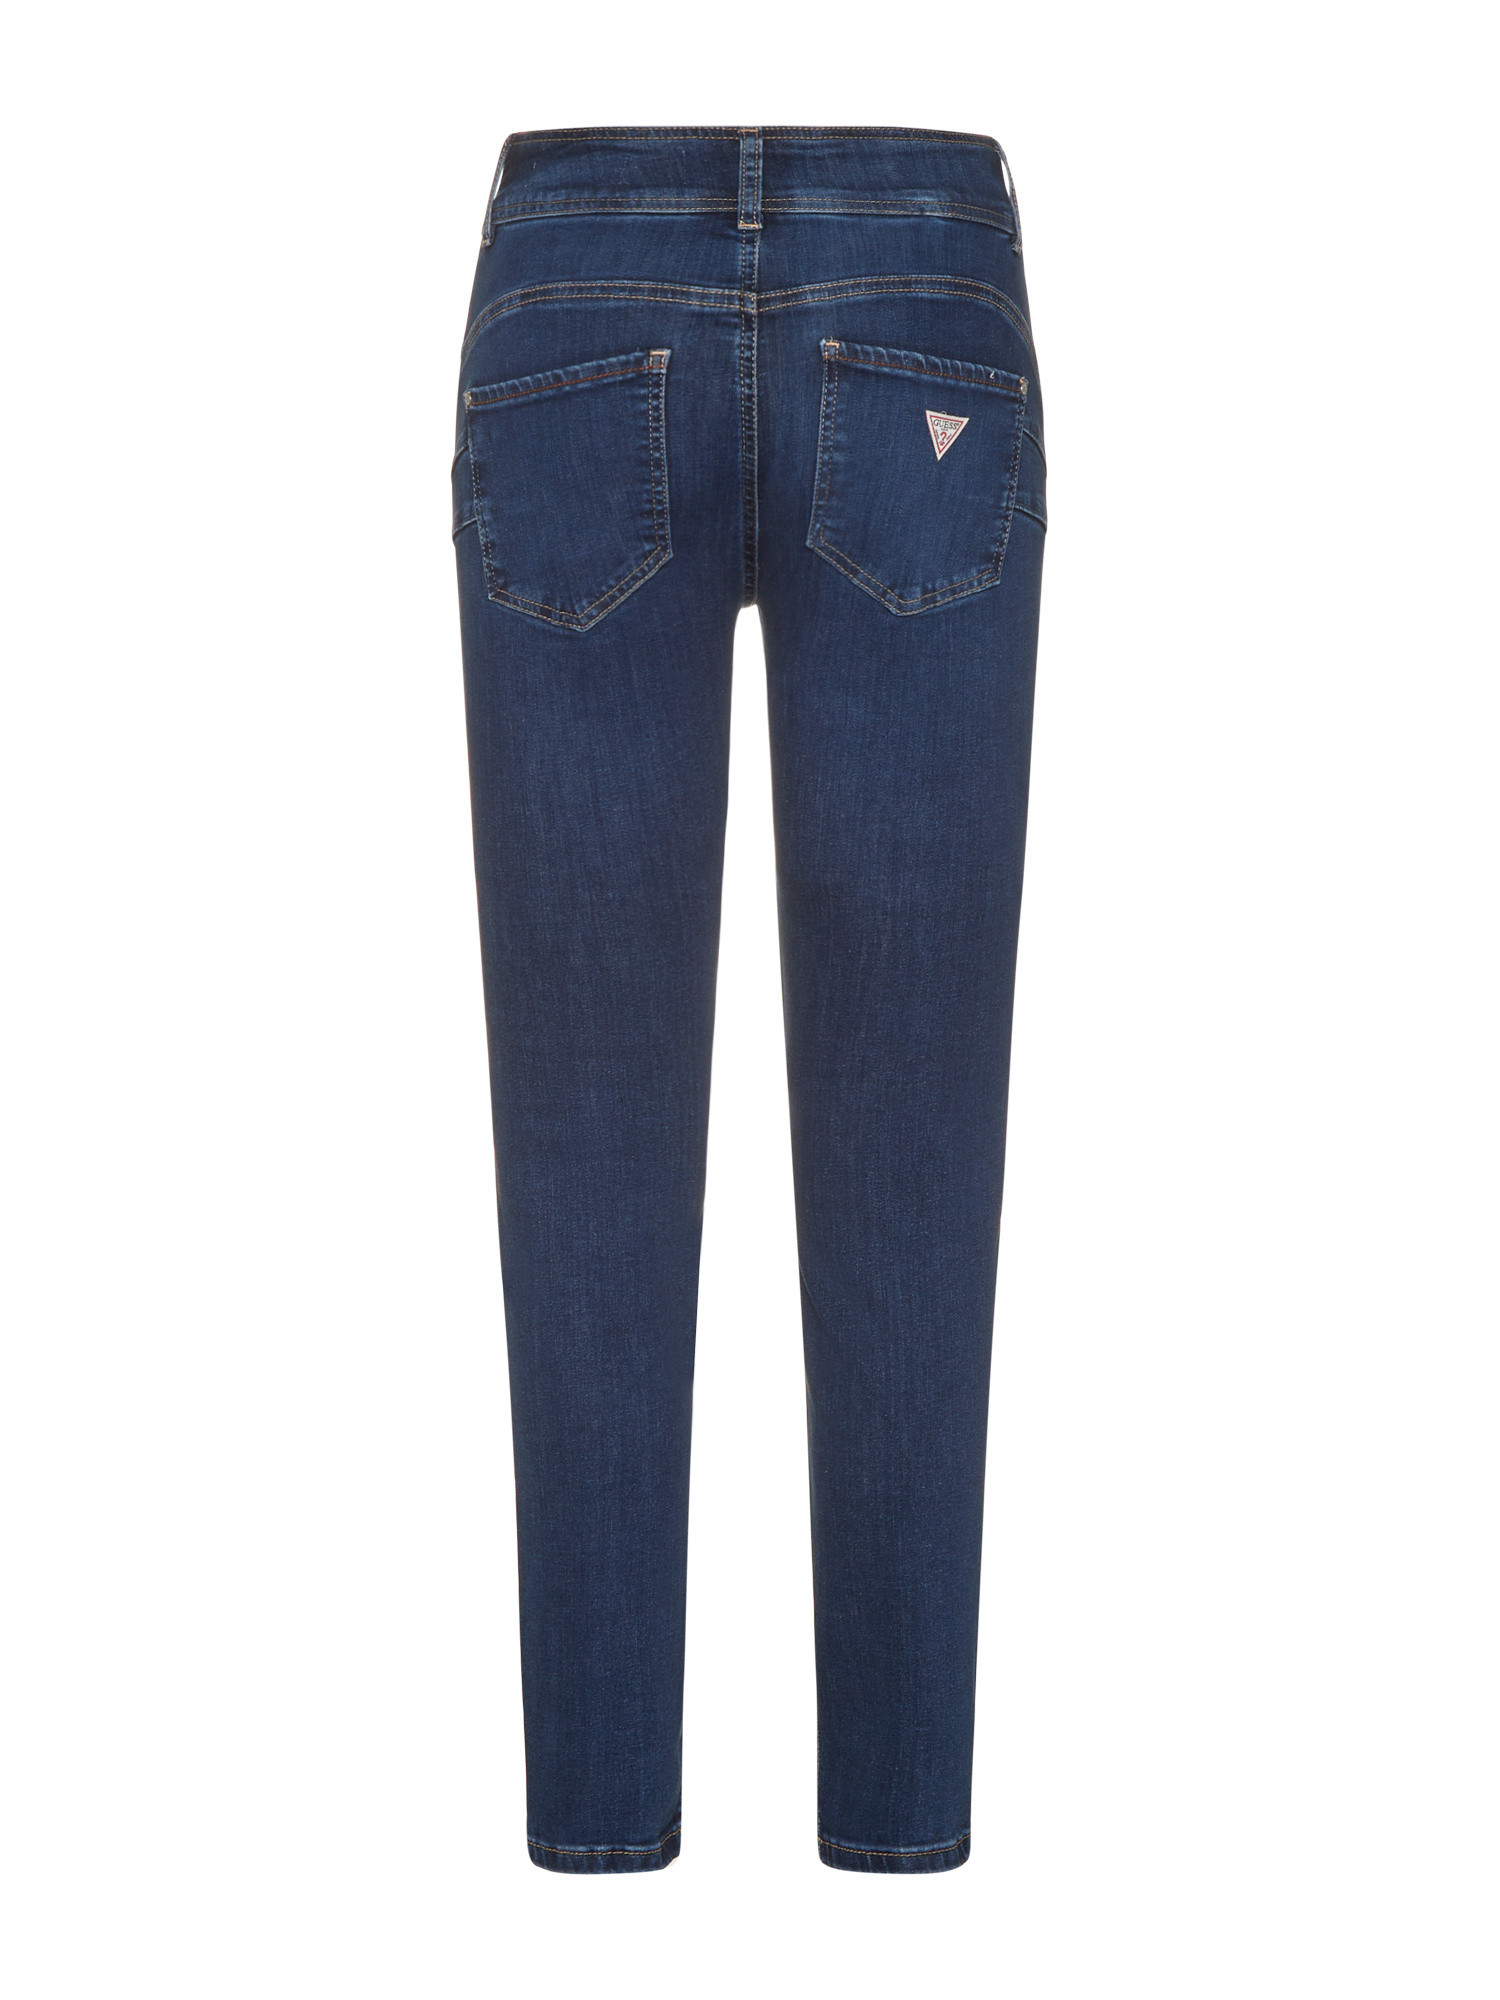 Guess - Five pocket skinny jeans, Blue, large image number 1